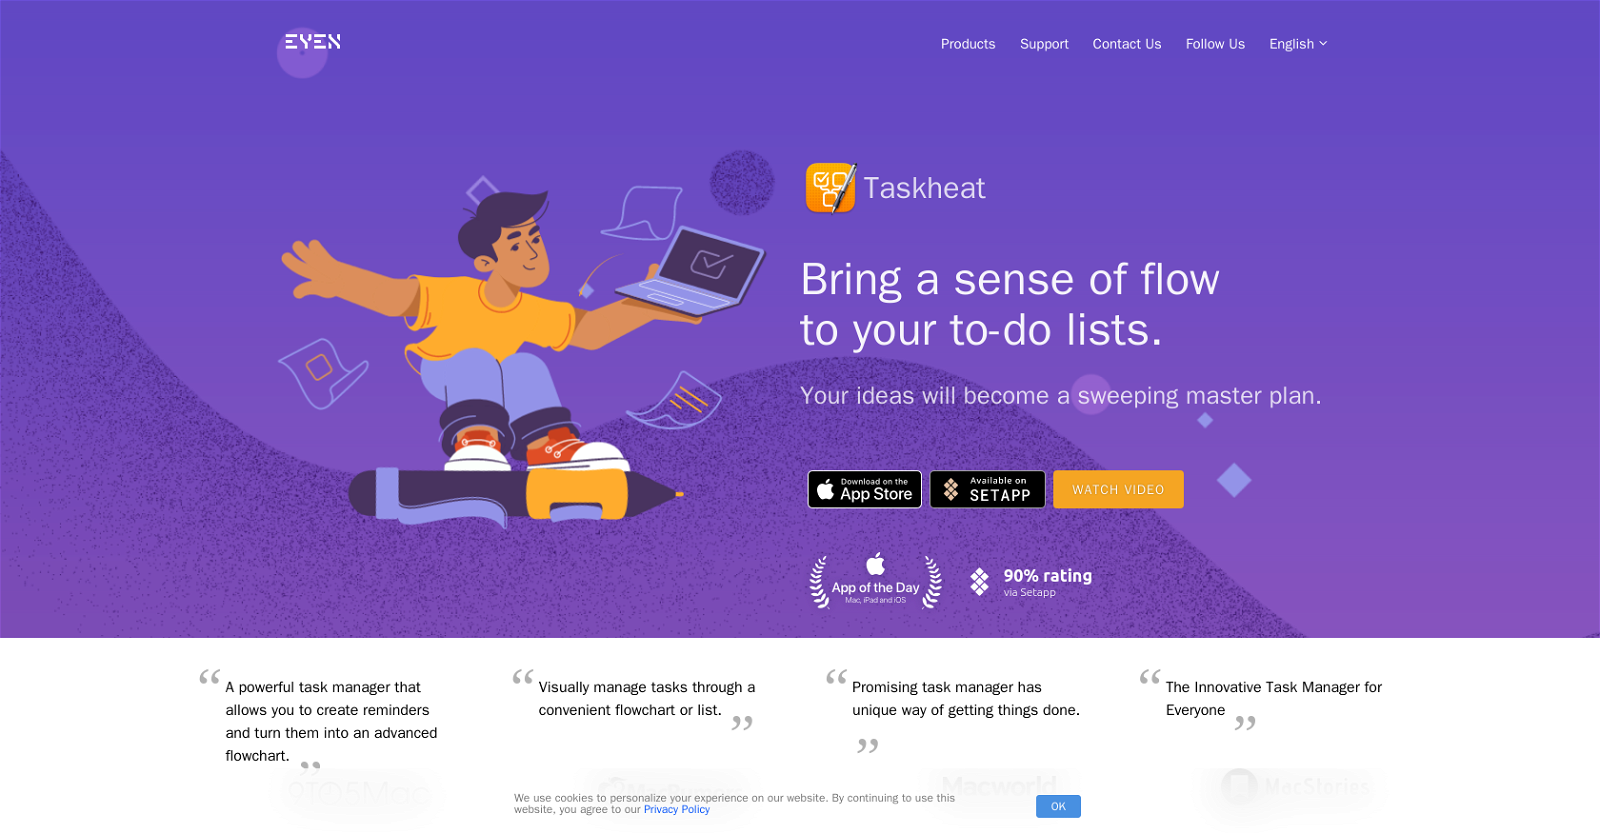 Taskheat AI Assistant